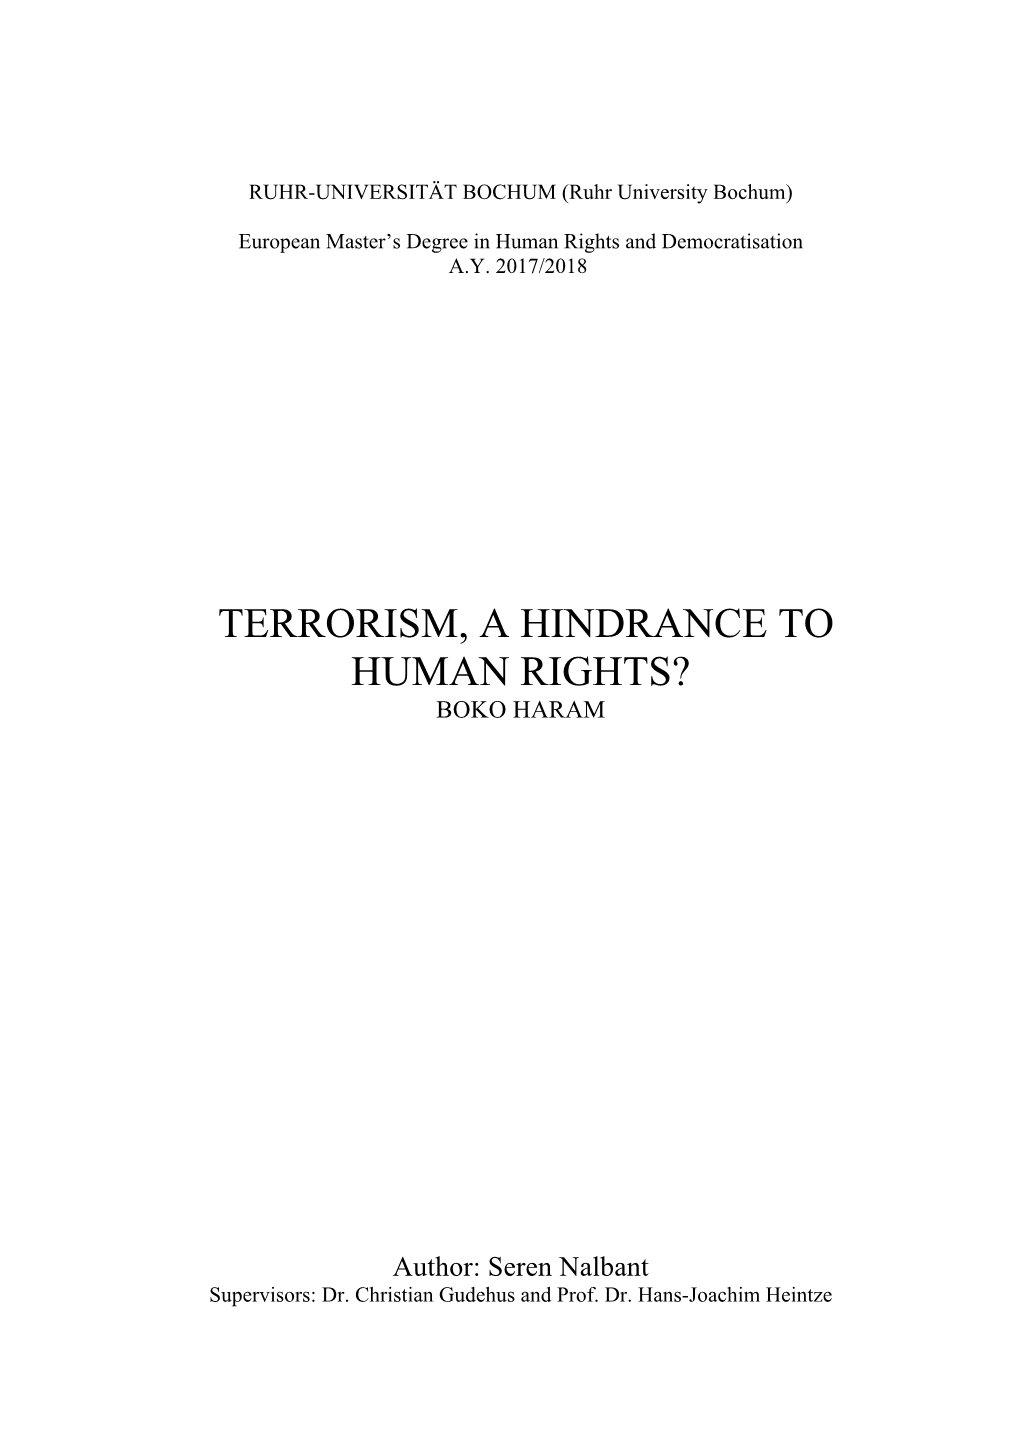 Terrorism, a Hindrance to Human Rights? Boko Haram